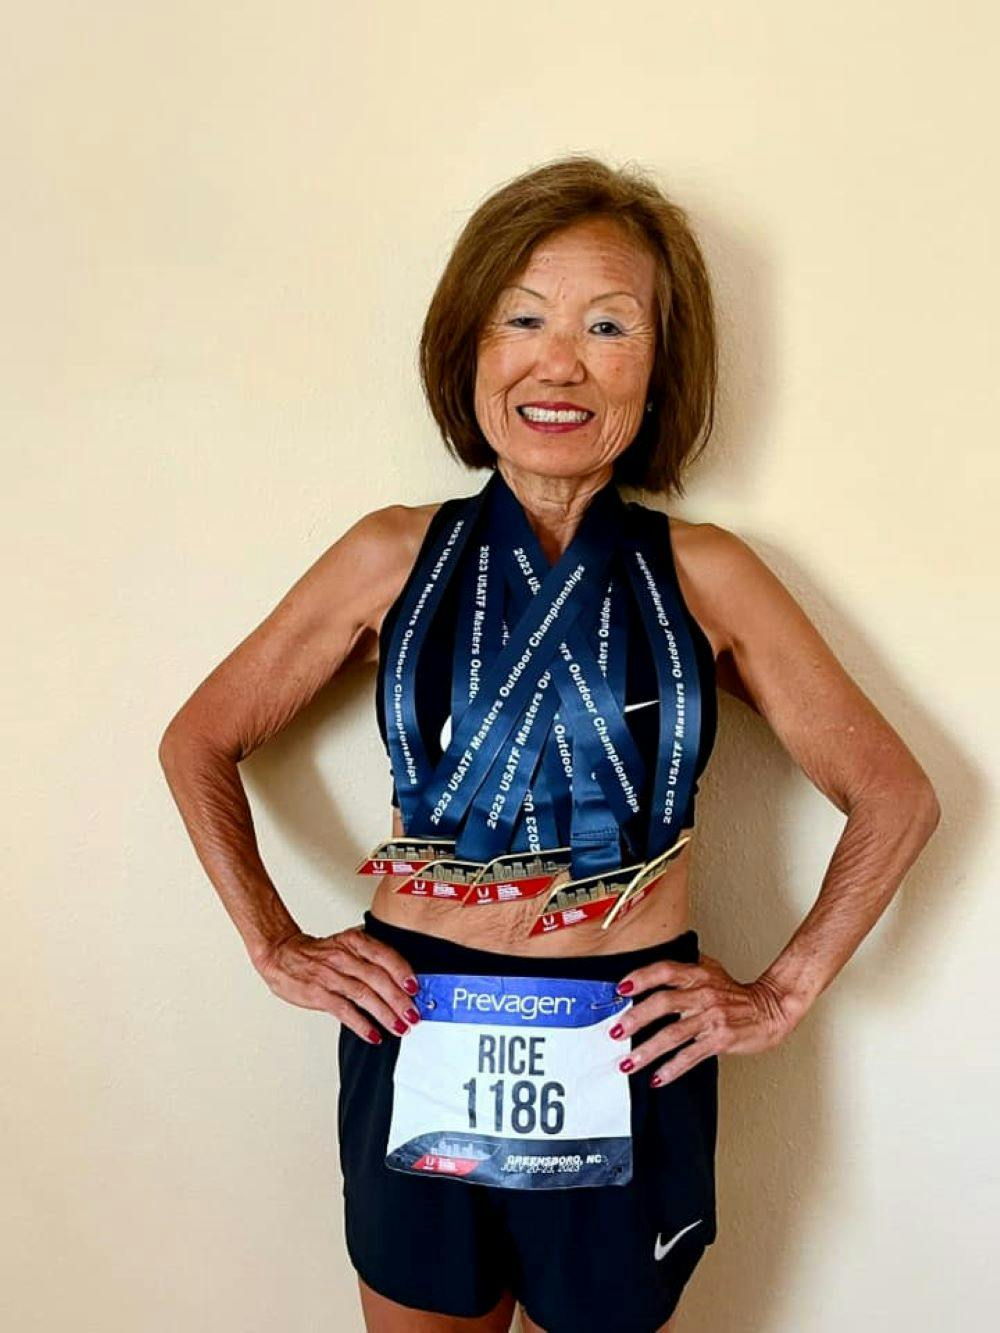 Αδιανόητο επίτευγμα από την 75χρονη Jeannie Rice: Κατέκτησε πέντε χρυσά μετάλλια, σημείωσε τρία παγκόσμια ρεκόρ! runbeat.gr 